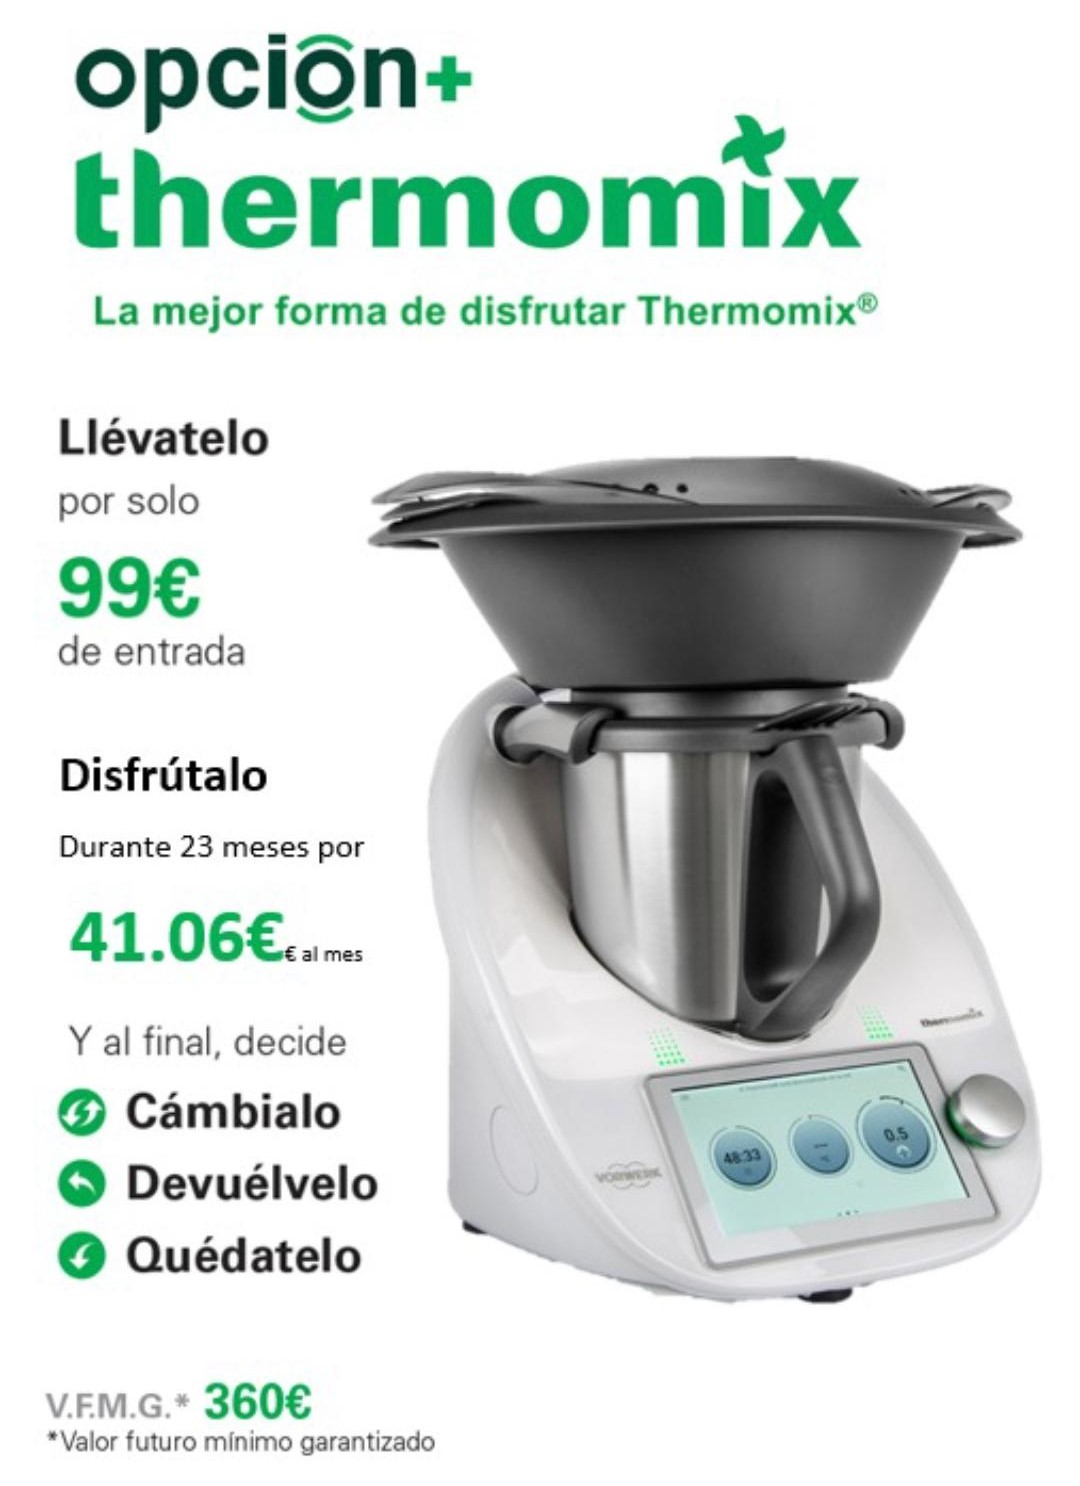 Nueva Thermomix TM6, características, precio y ficha técnica